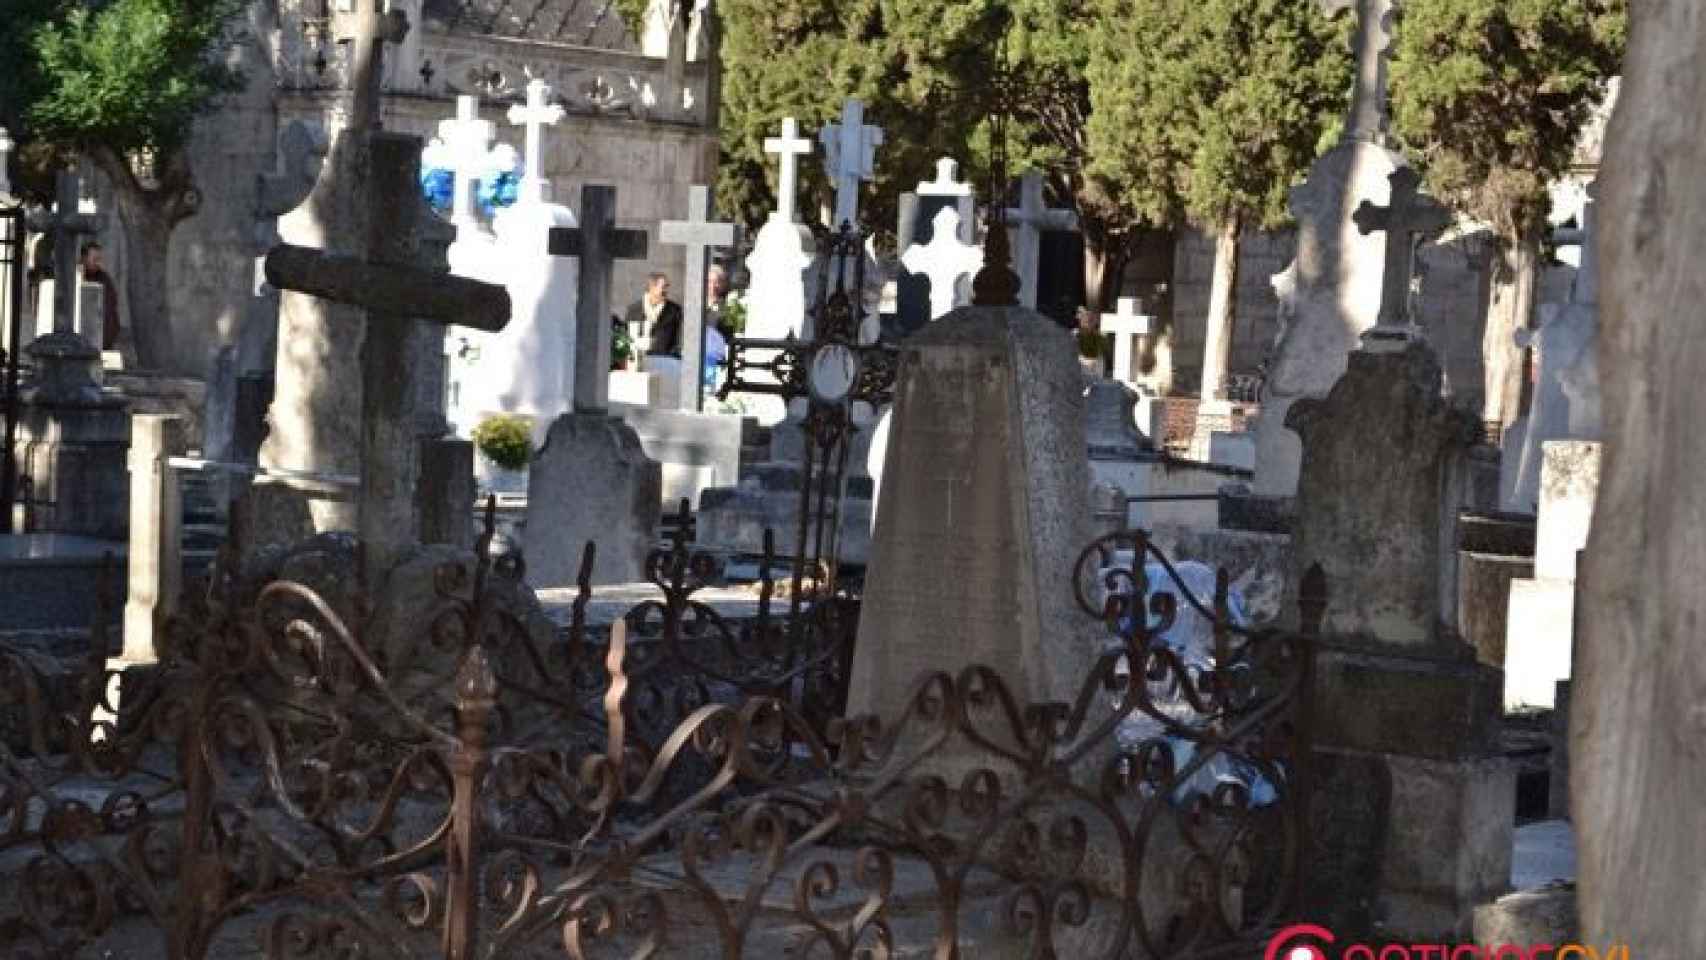 cementerio-del-carmen-valladolid-4